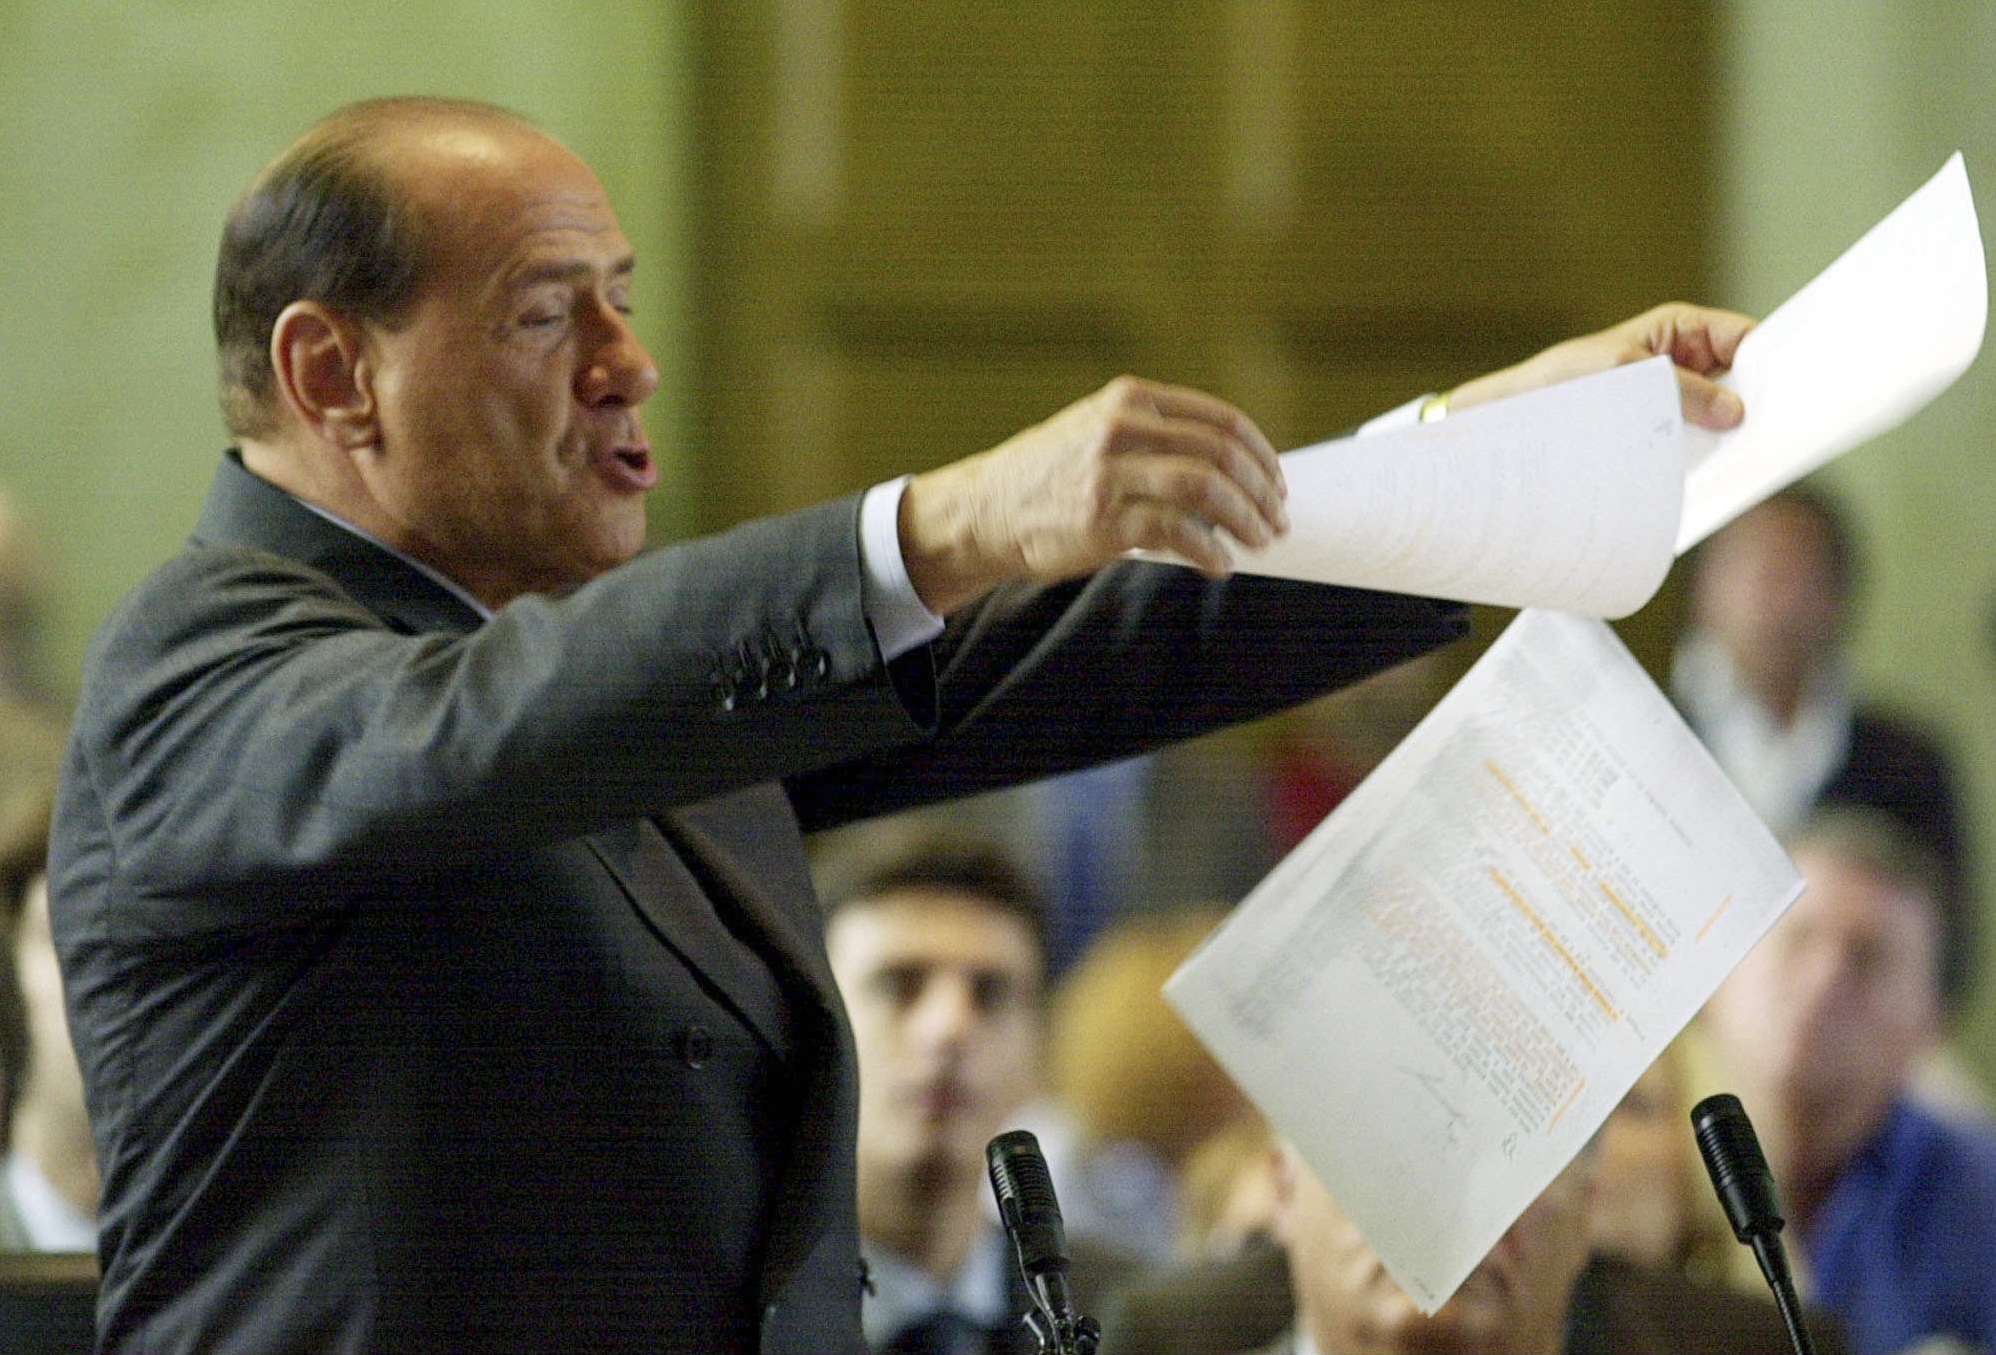 El 17 de junio de 2003, Silvio Berlusconi muestra archivos mientras se dirige al tribunal en Milán, Italia. El Primer Ministro está siendo juzgado por pagar presuntamente por mantener relaciones sexuales con una adolescente marroquí menor de edad. © Antoino Calanni/AP/SIPA